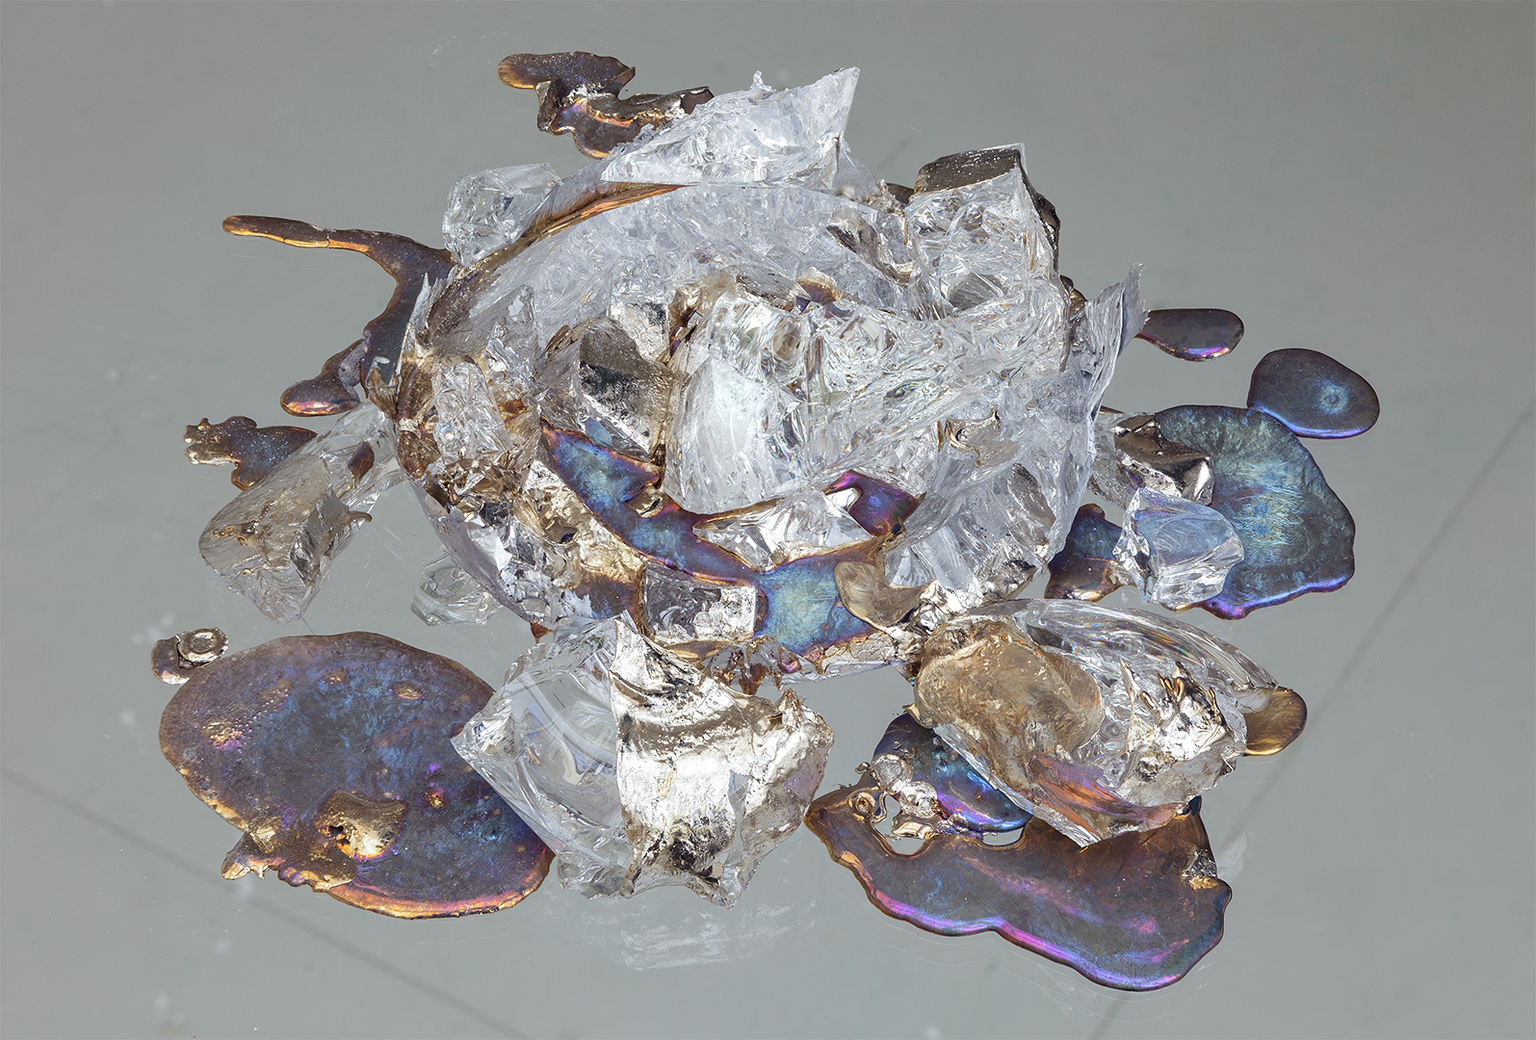 Utstilling: Myths of the Marble - samtidskunsten og det virtuelle